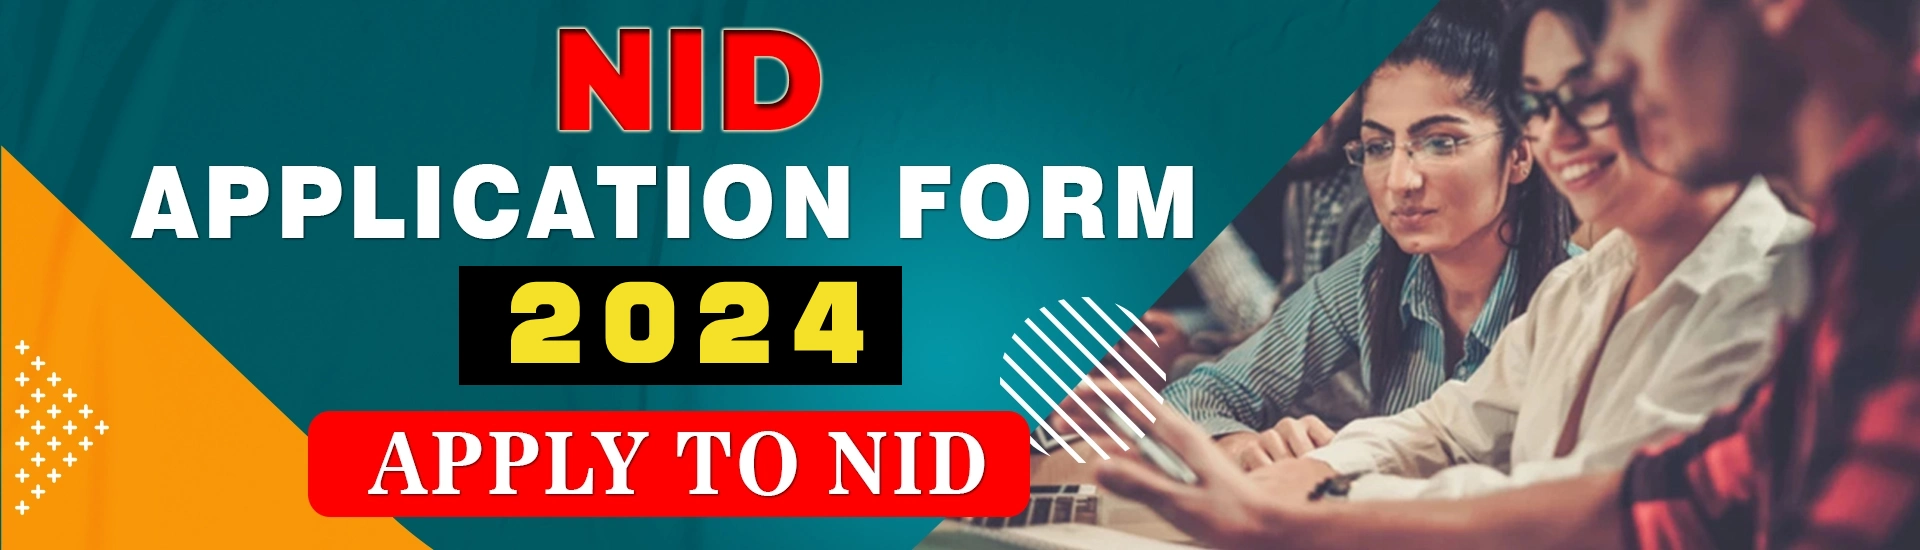 NID APPLICATION FORM 2024